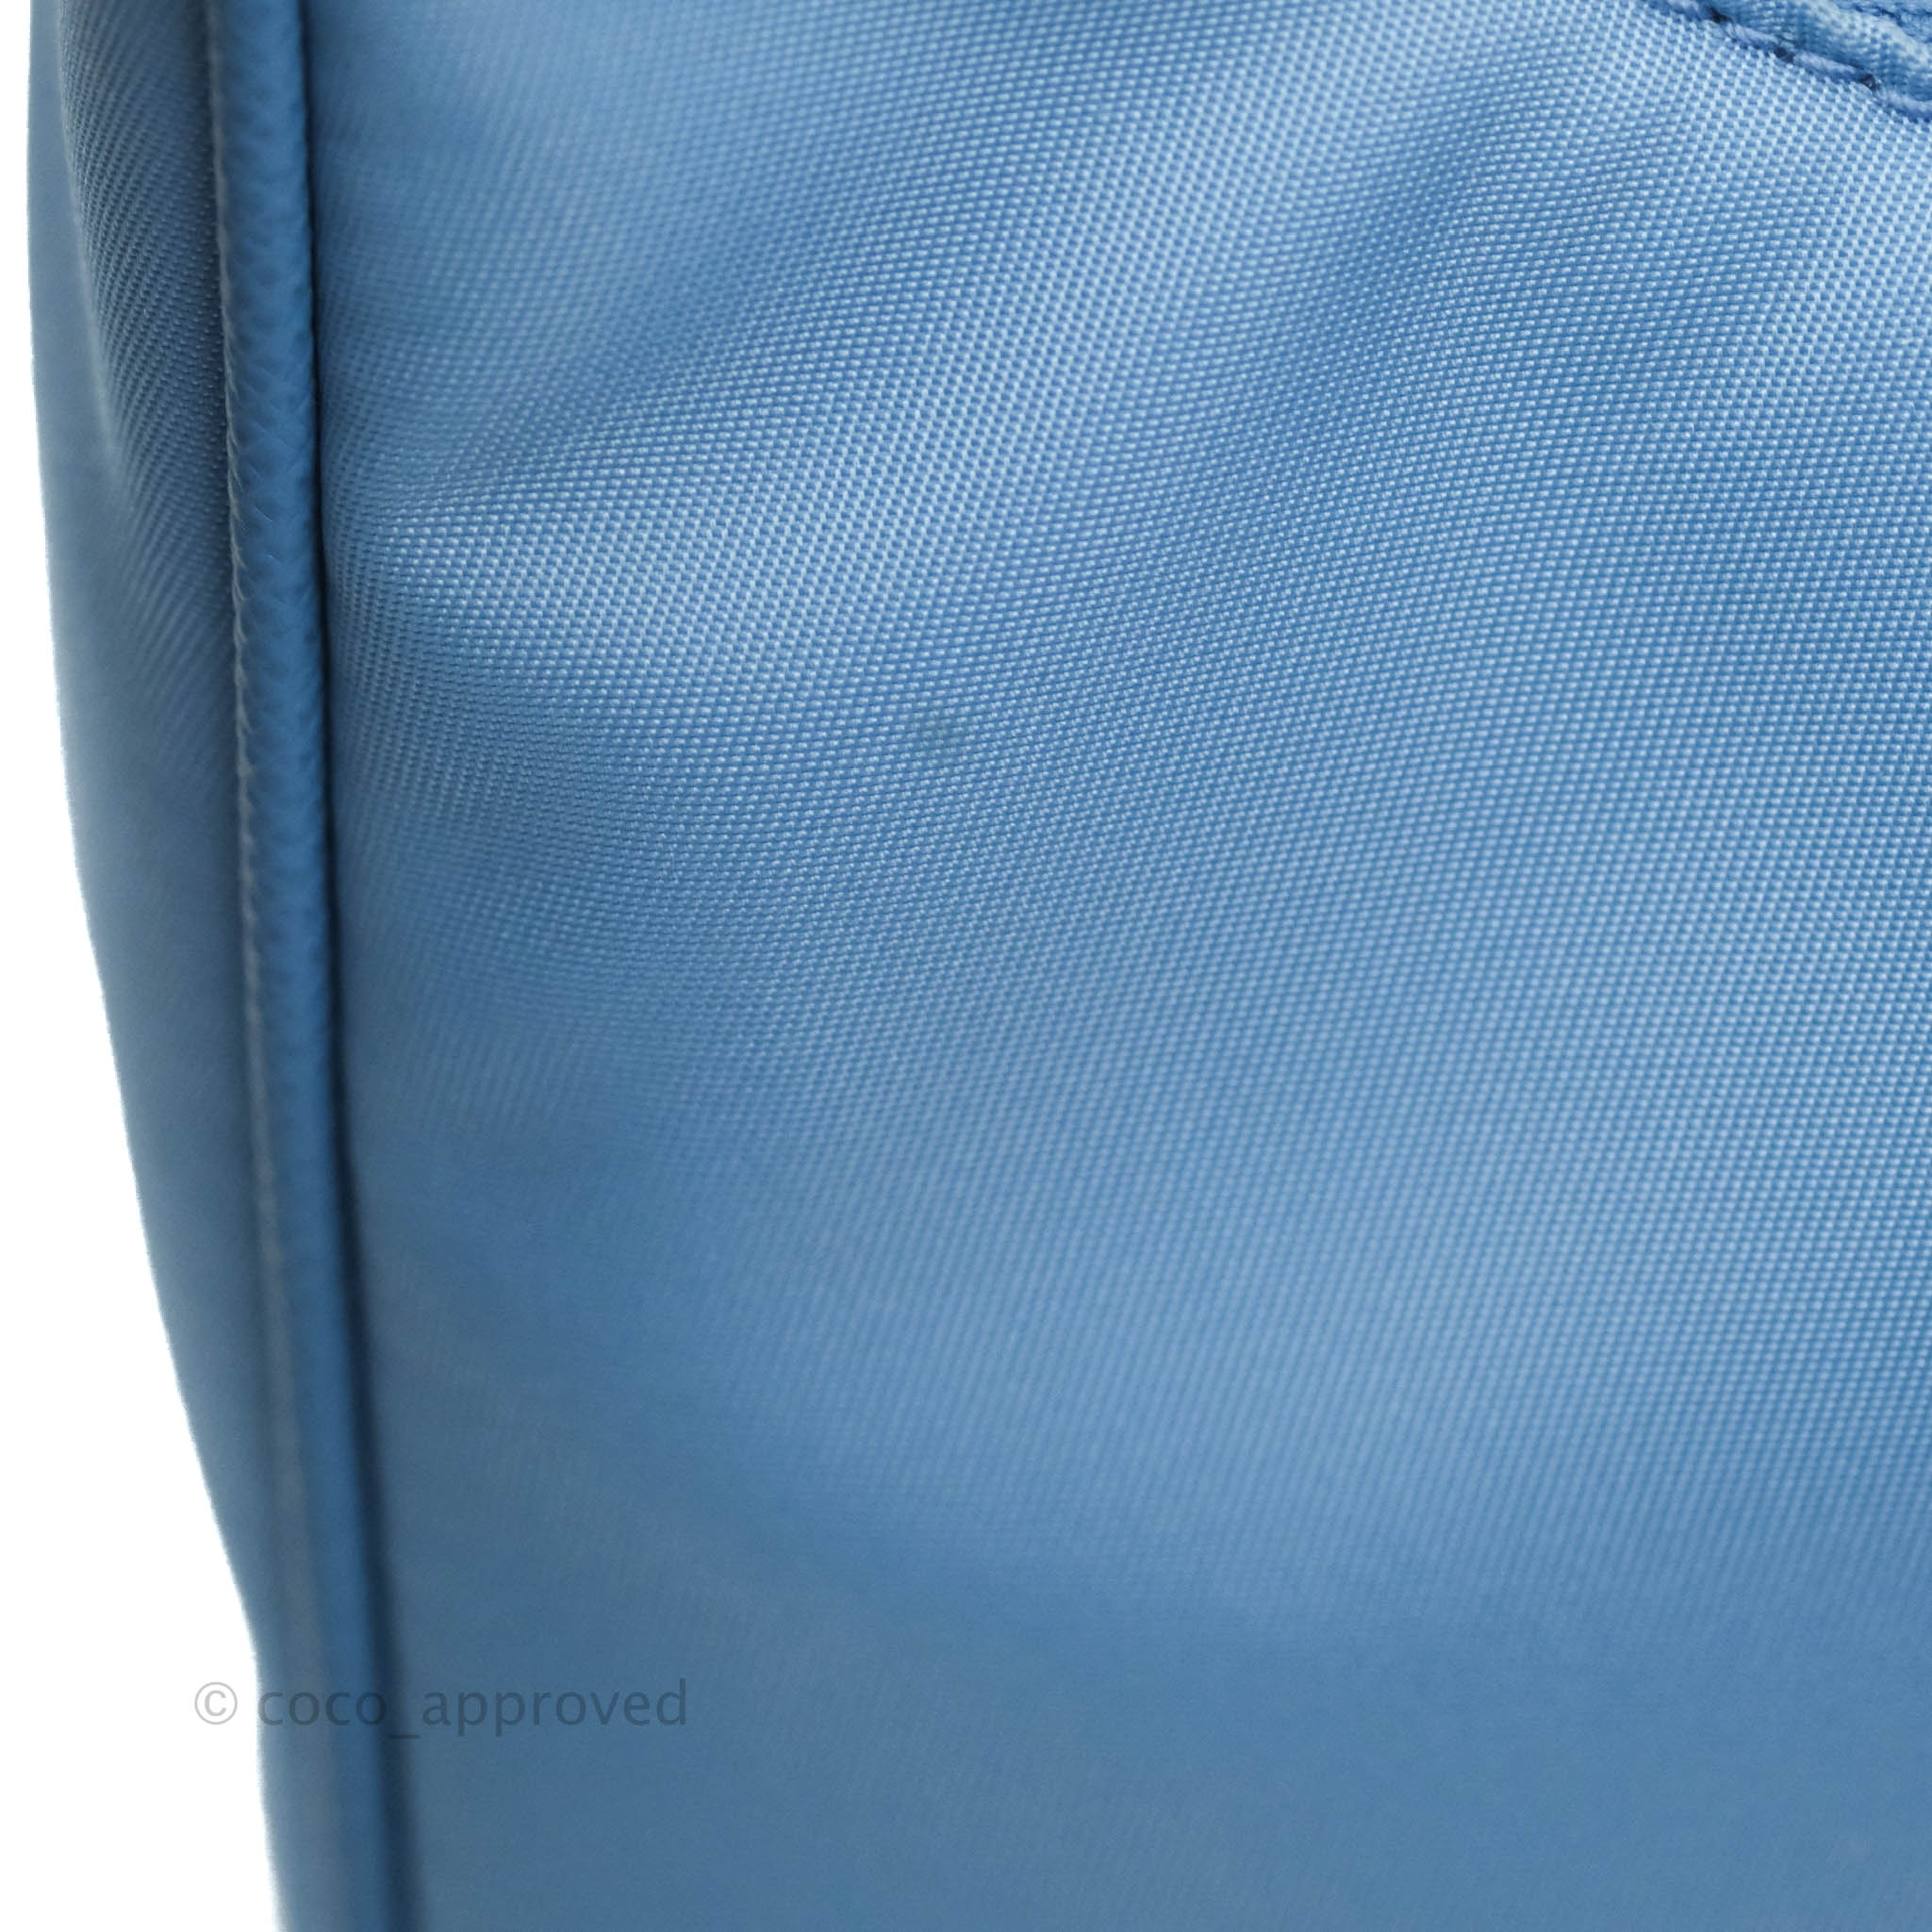 Re-edition 2005 handbag Prada Blue in Wicker - 34894540